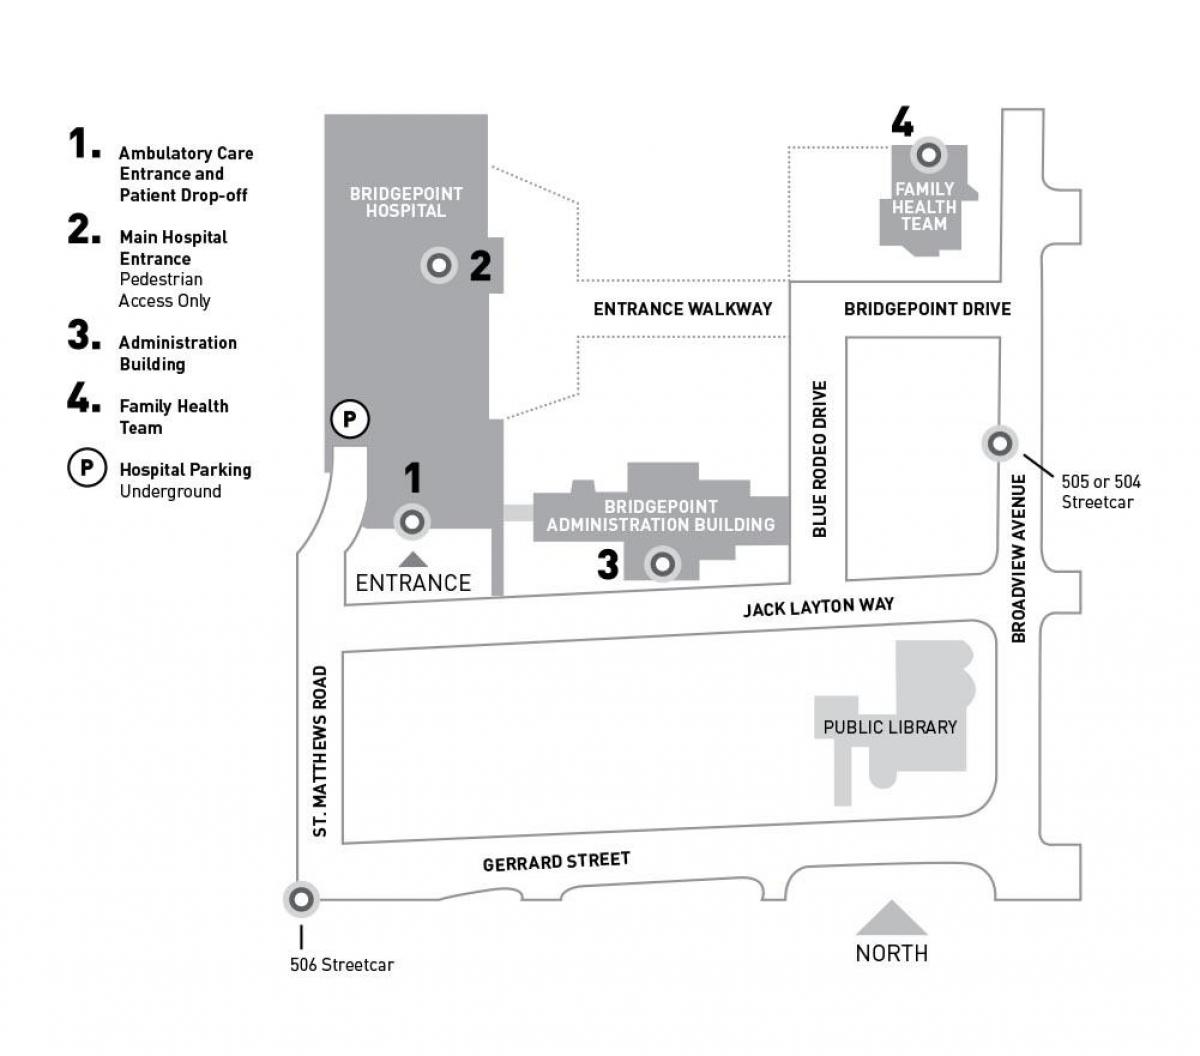 แผนที่ของโรงพยาบาล Sinai สุขภาพของระบบ-Bridgepoint โตรอนโต